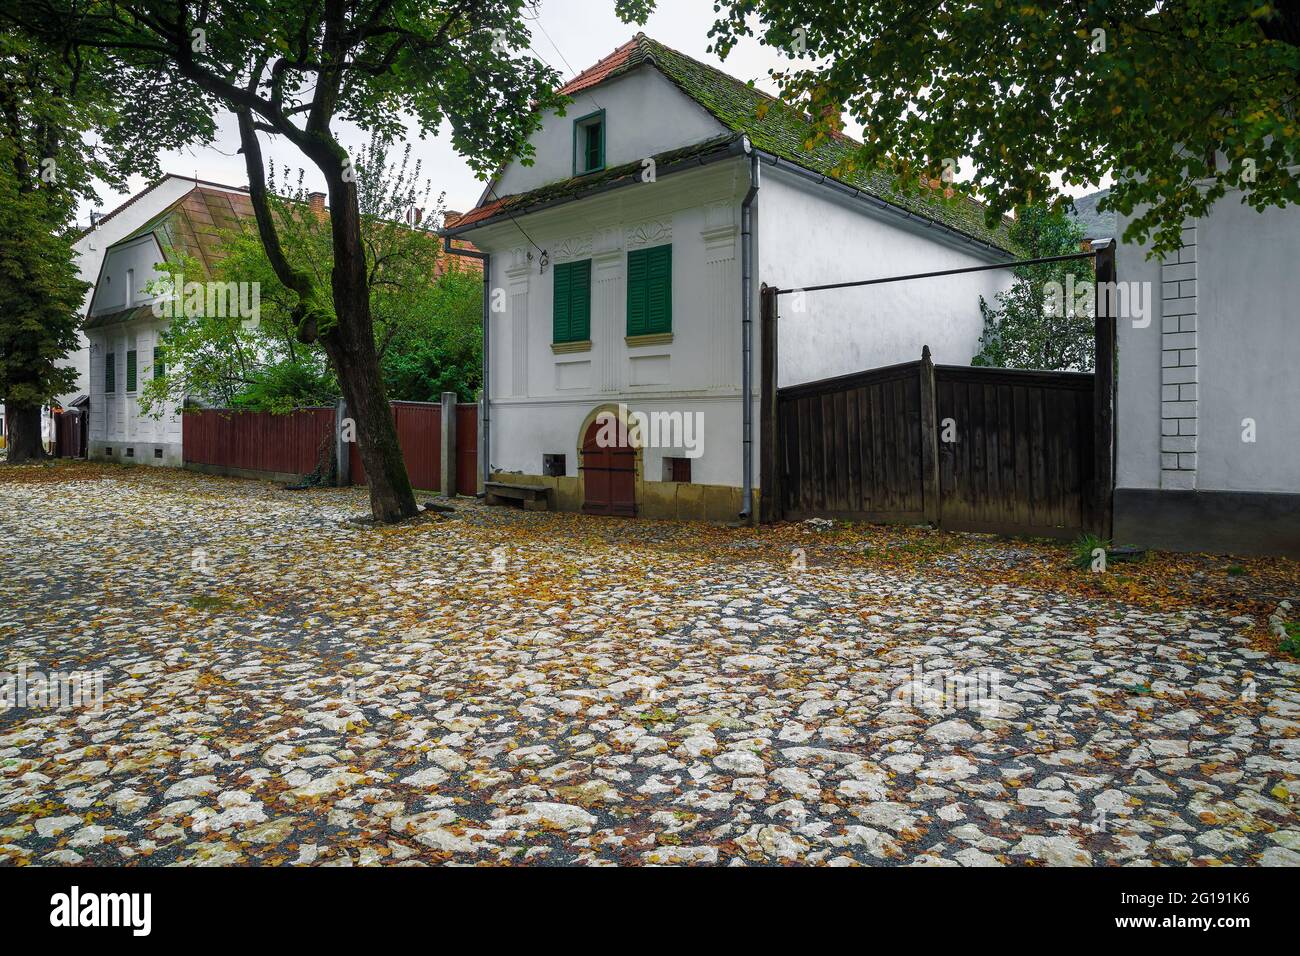 Maisons blanches anciennes et mignonnes à Torocko. Maisons rustiques blanchies à la chaux dans la rue calme, Rimetea, comté d'Alba, Transylvanie, Roumanie, Europe Banque D'Images